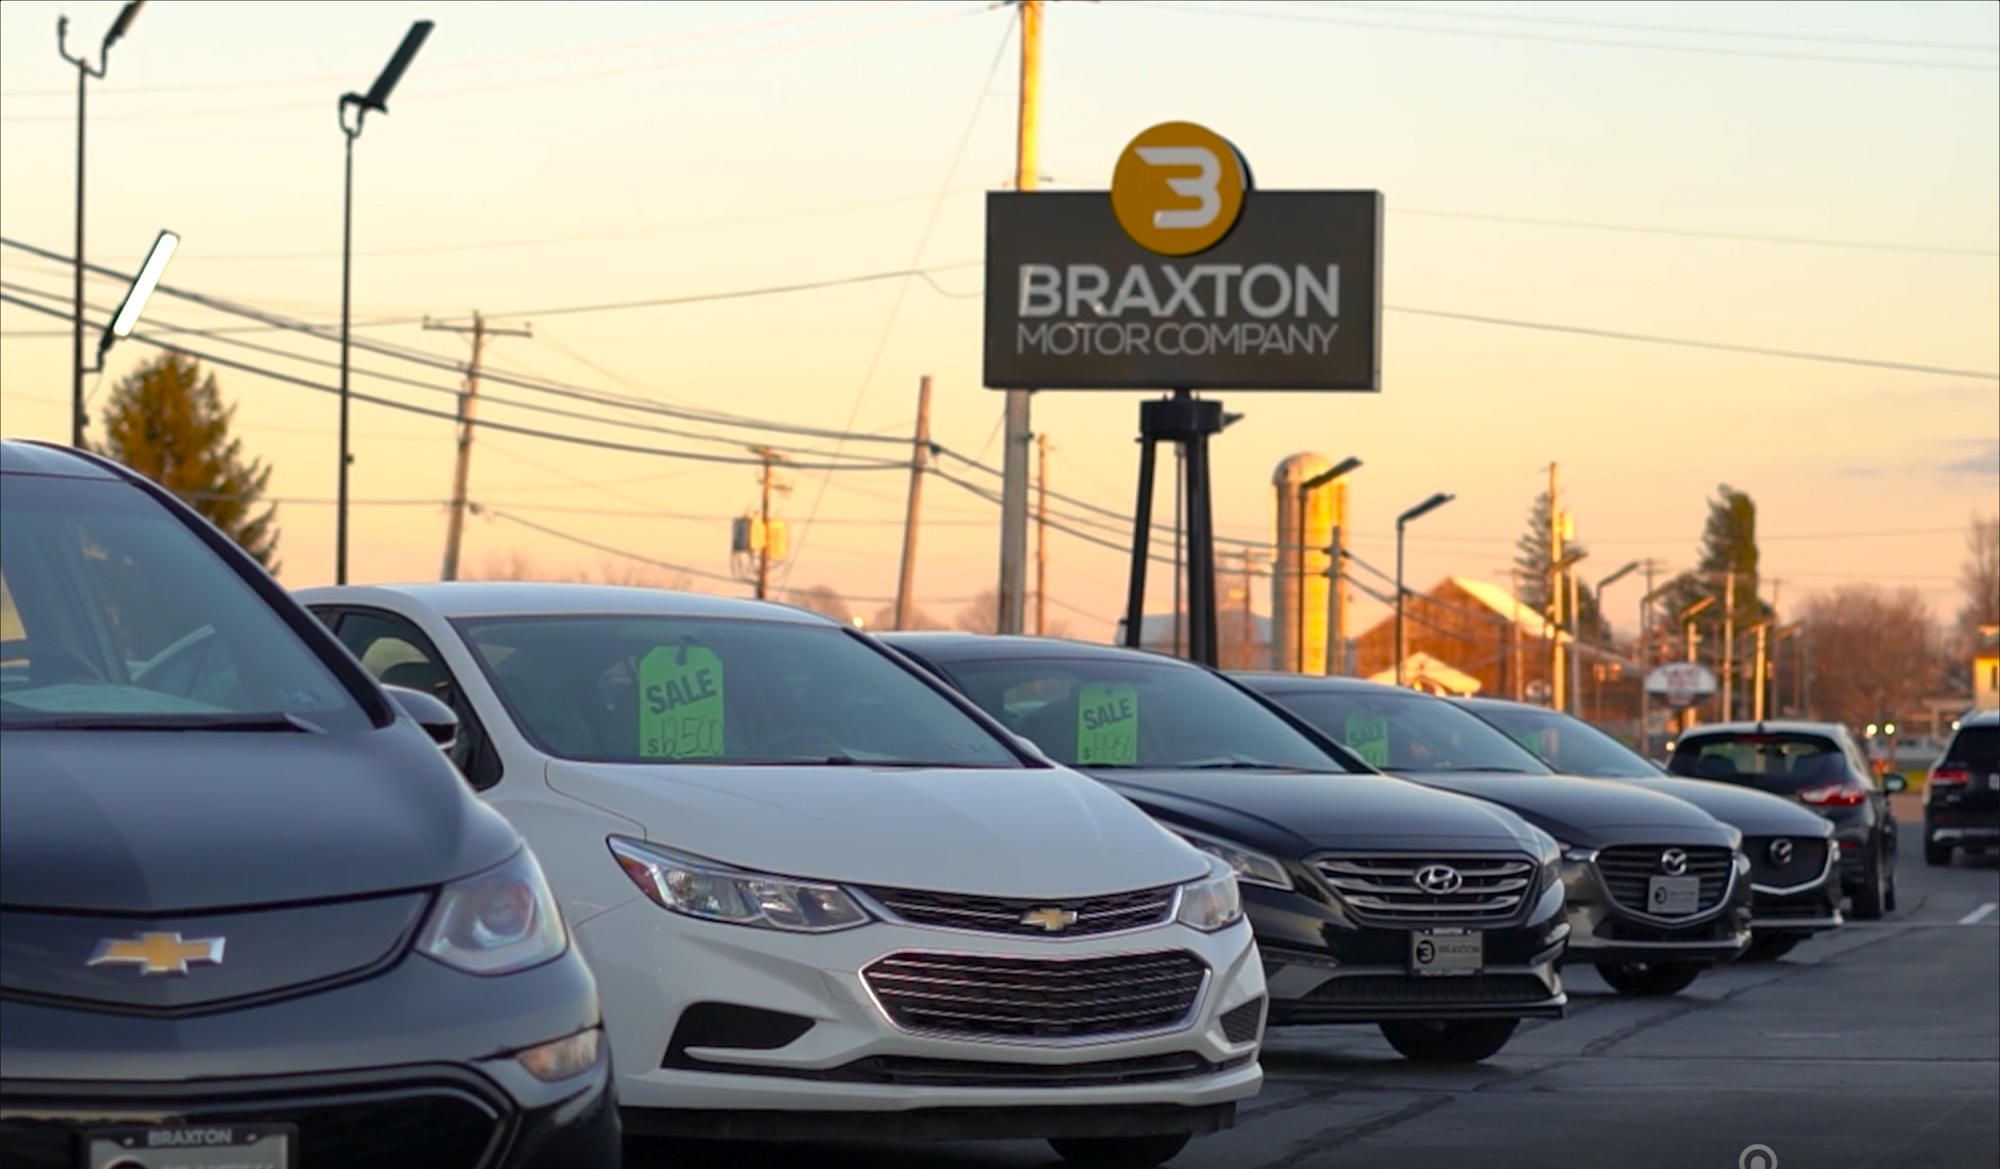 Braxton Motor Company